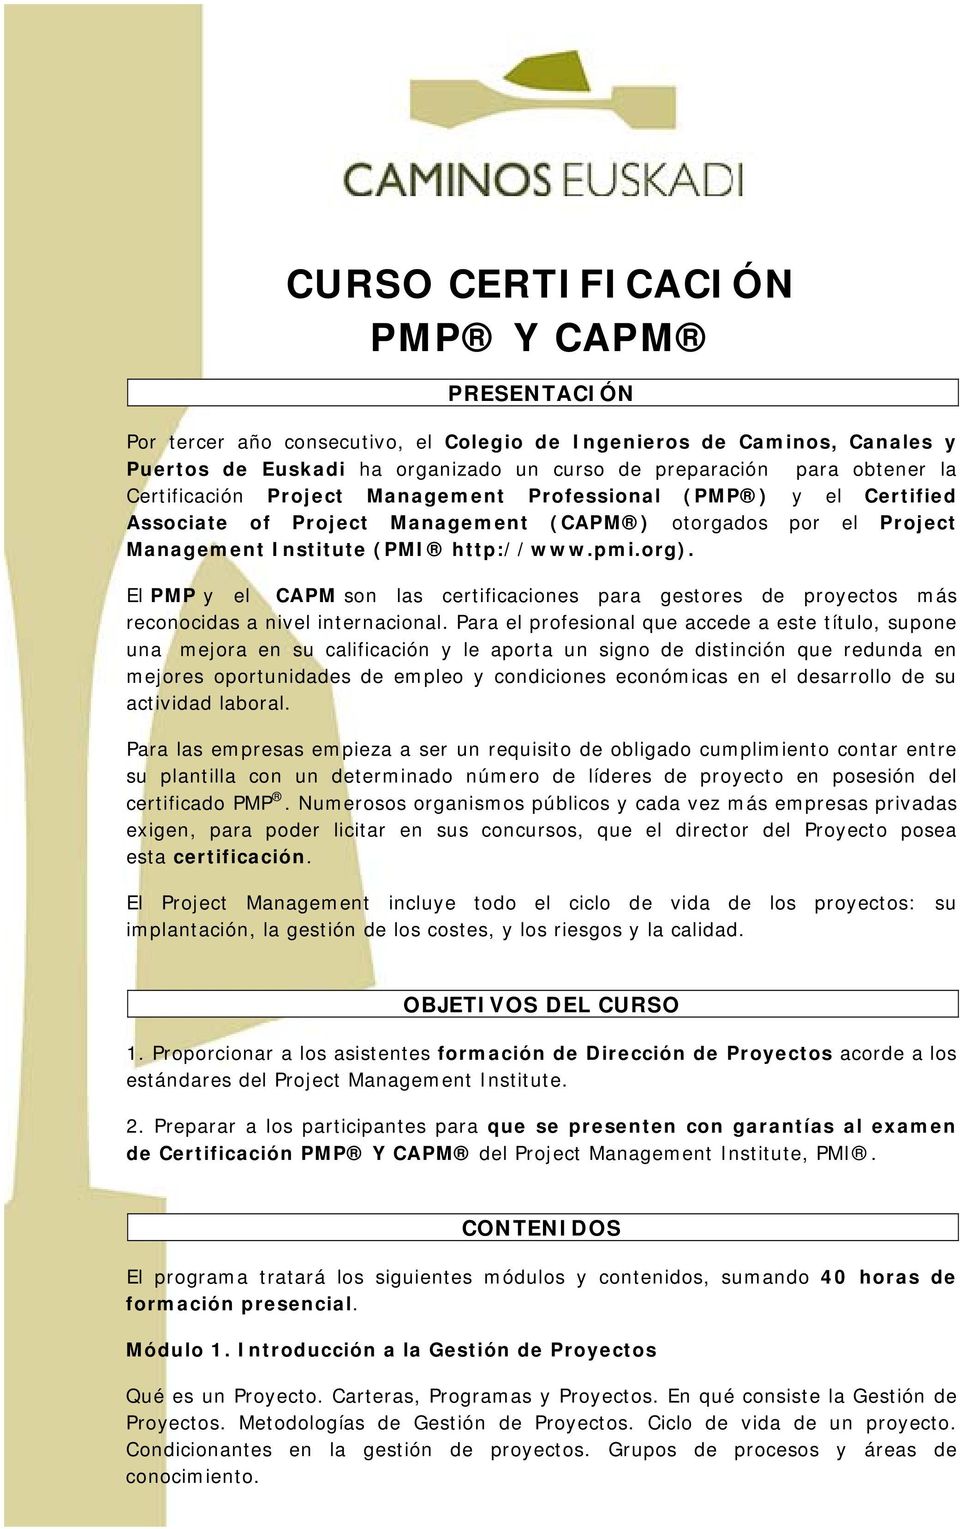 El PMP y el CAPM son las certificaciones para gestores de proyectos más reconocidas a nivel internacional.